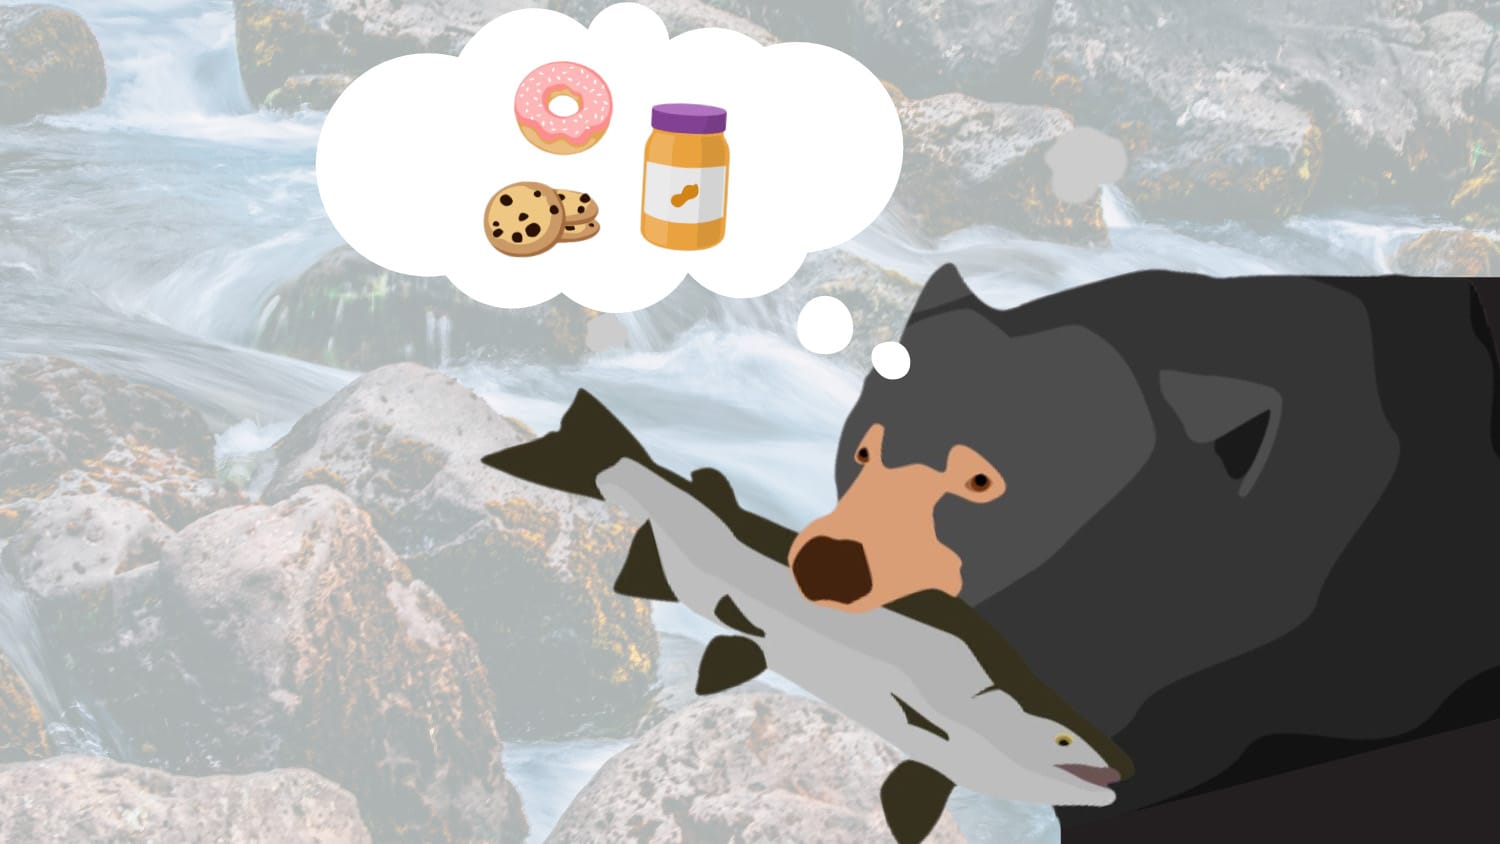 这幅漫画显示嘴里叼着鱼的熊在想着甜甜圈